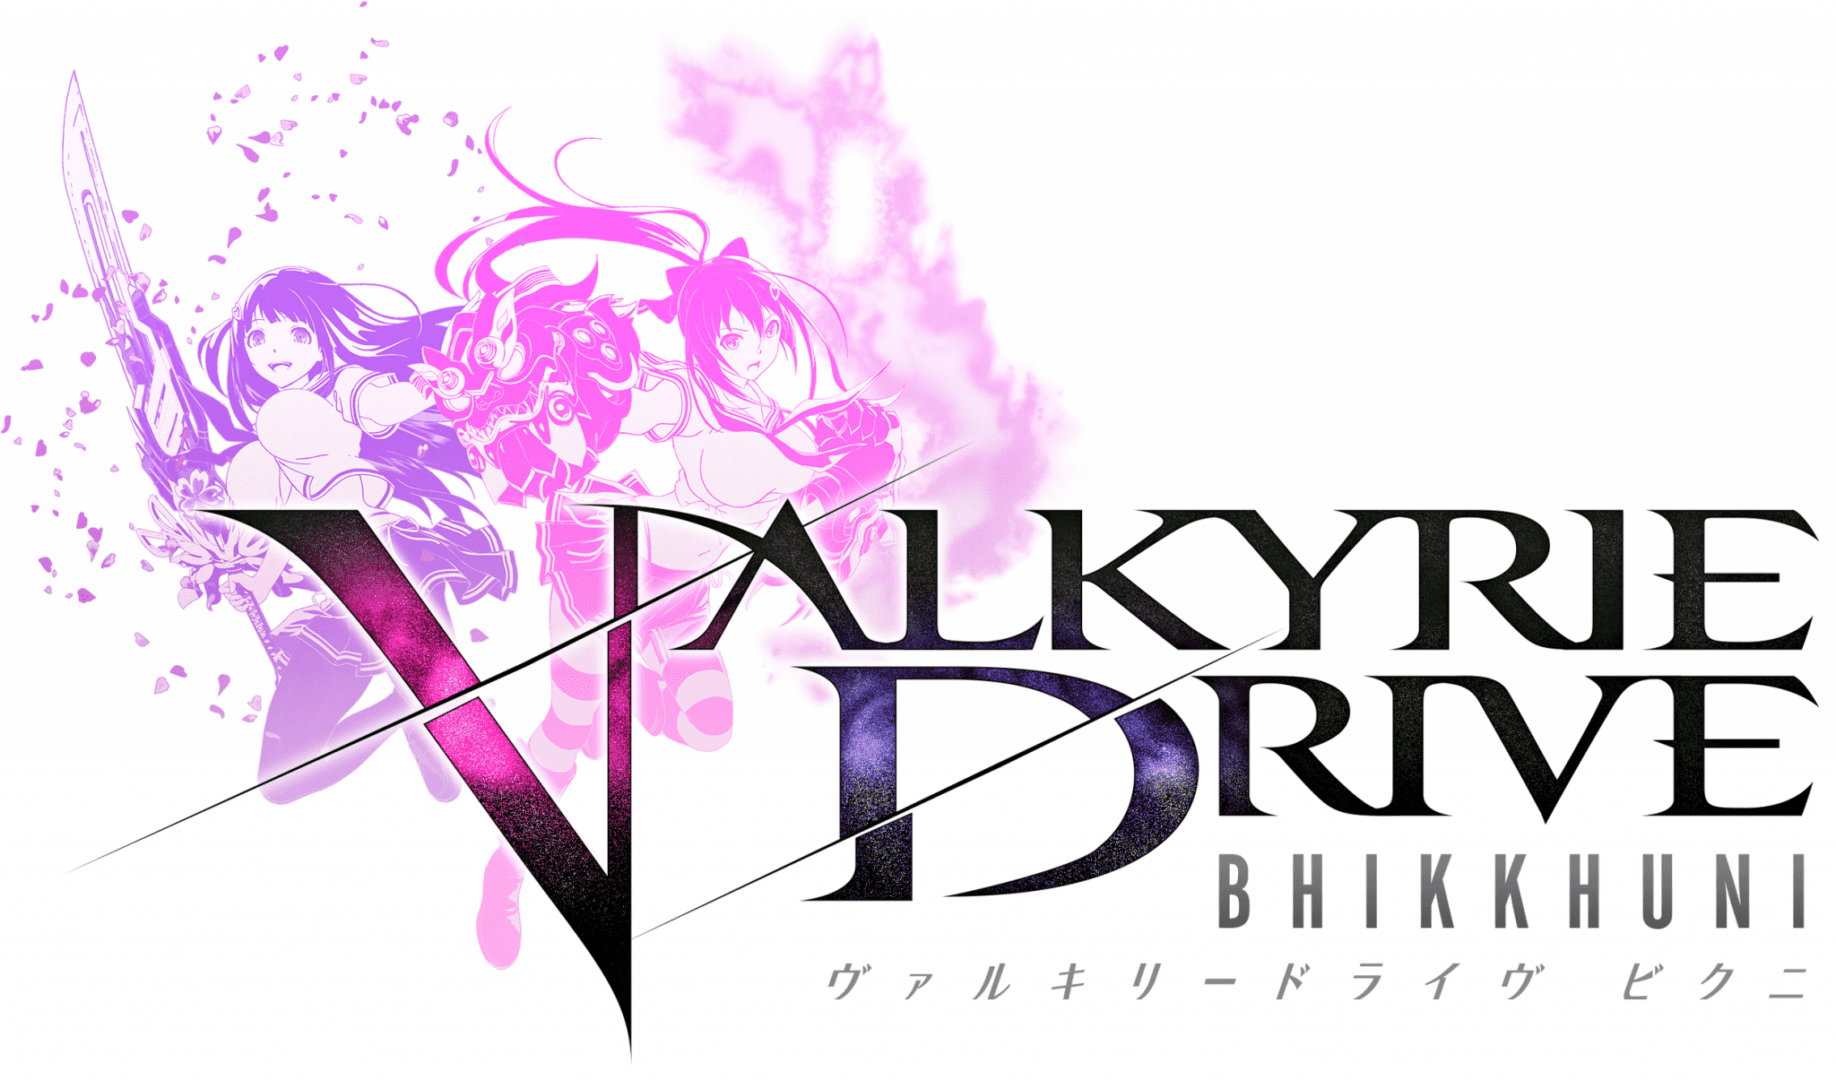 Valkyrie Drive llegará en inglés a Europa y Norte America a los PS Vita